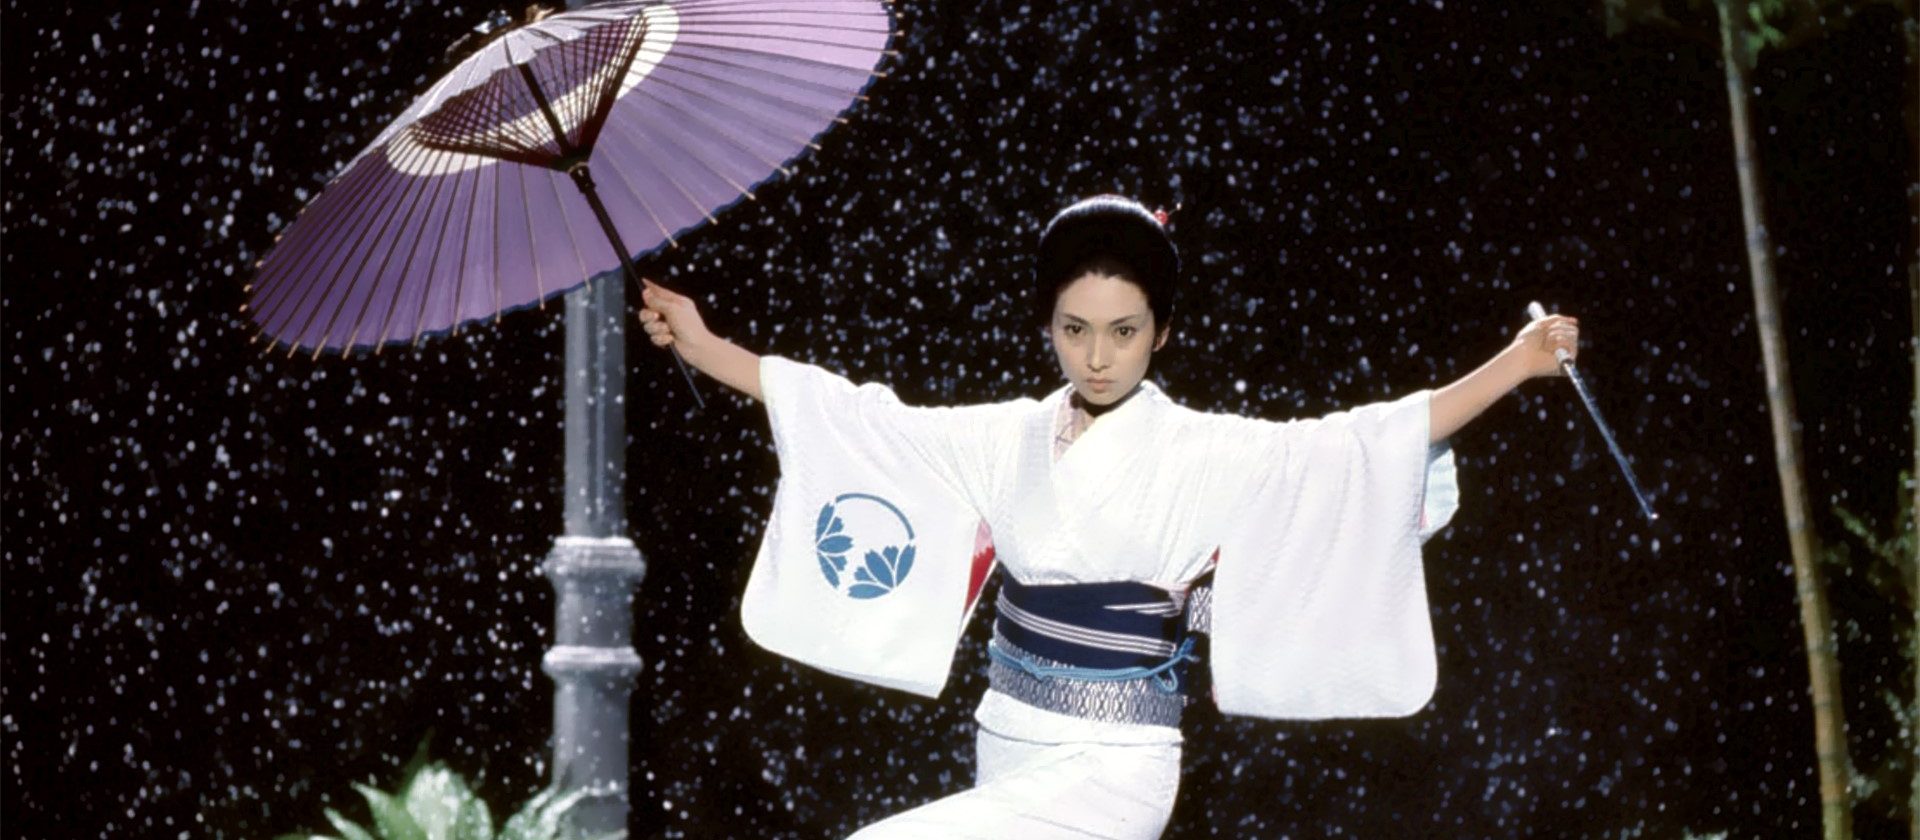 Meiko Kaji as Lady Snowblood